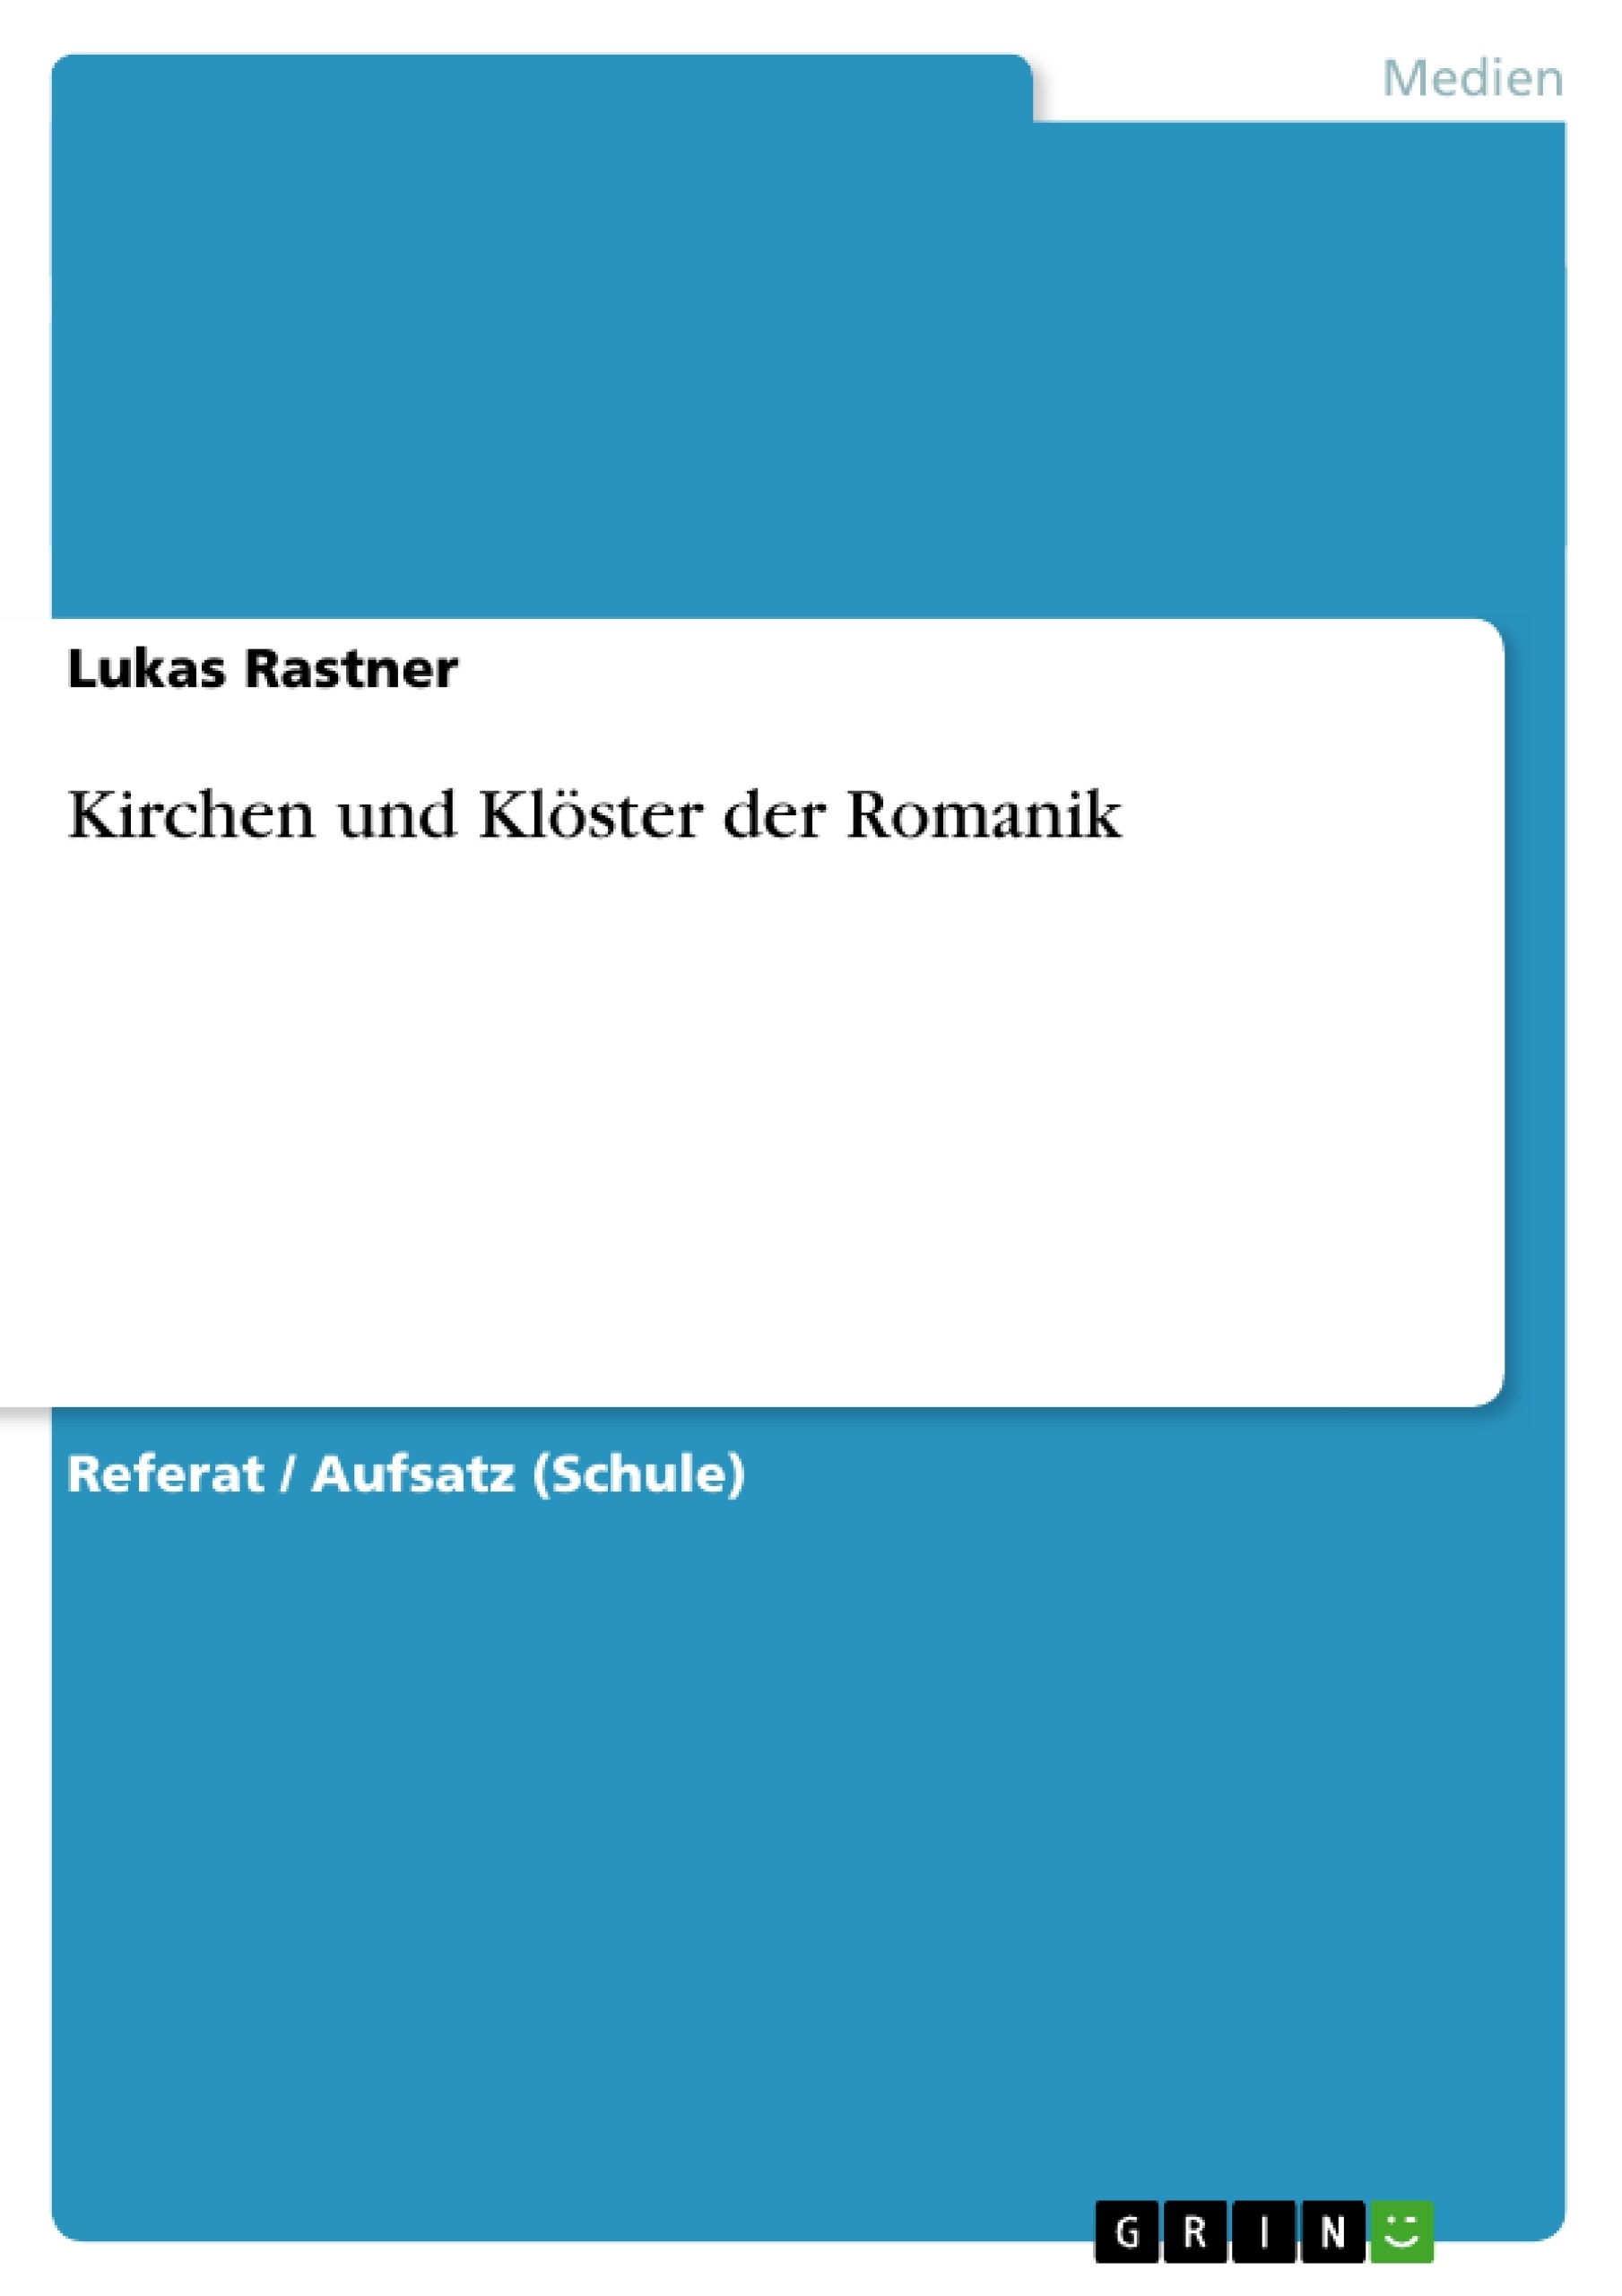 Titre: Kirchen und Klöster der Romanik